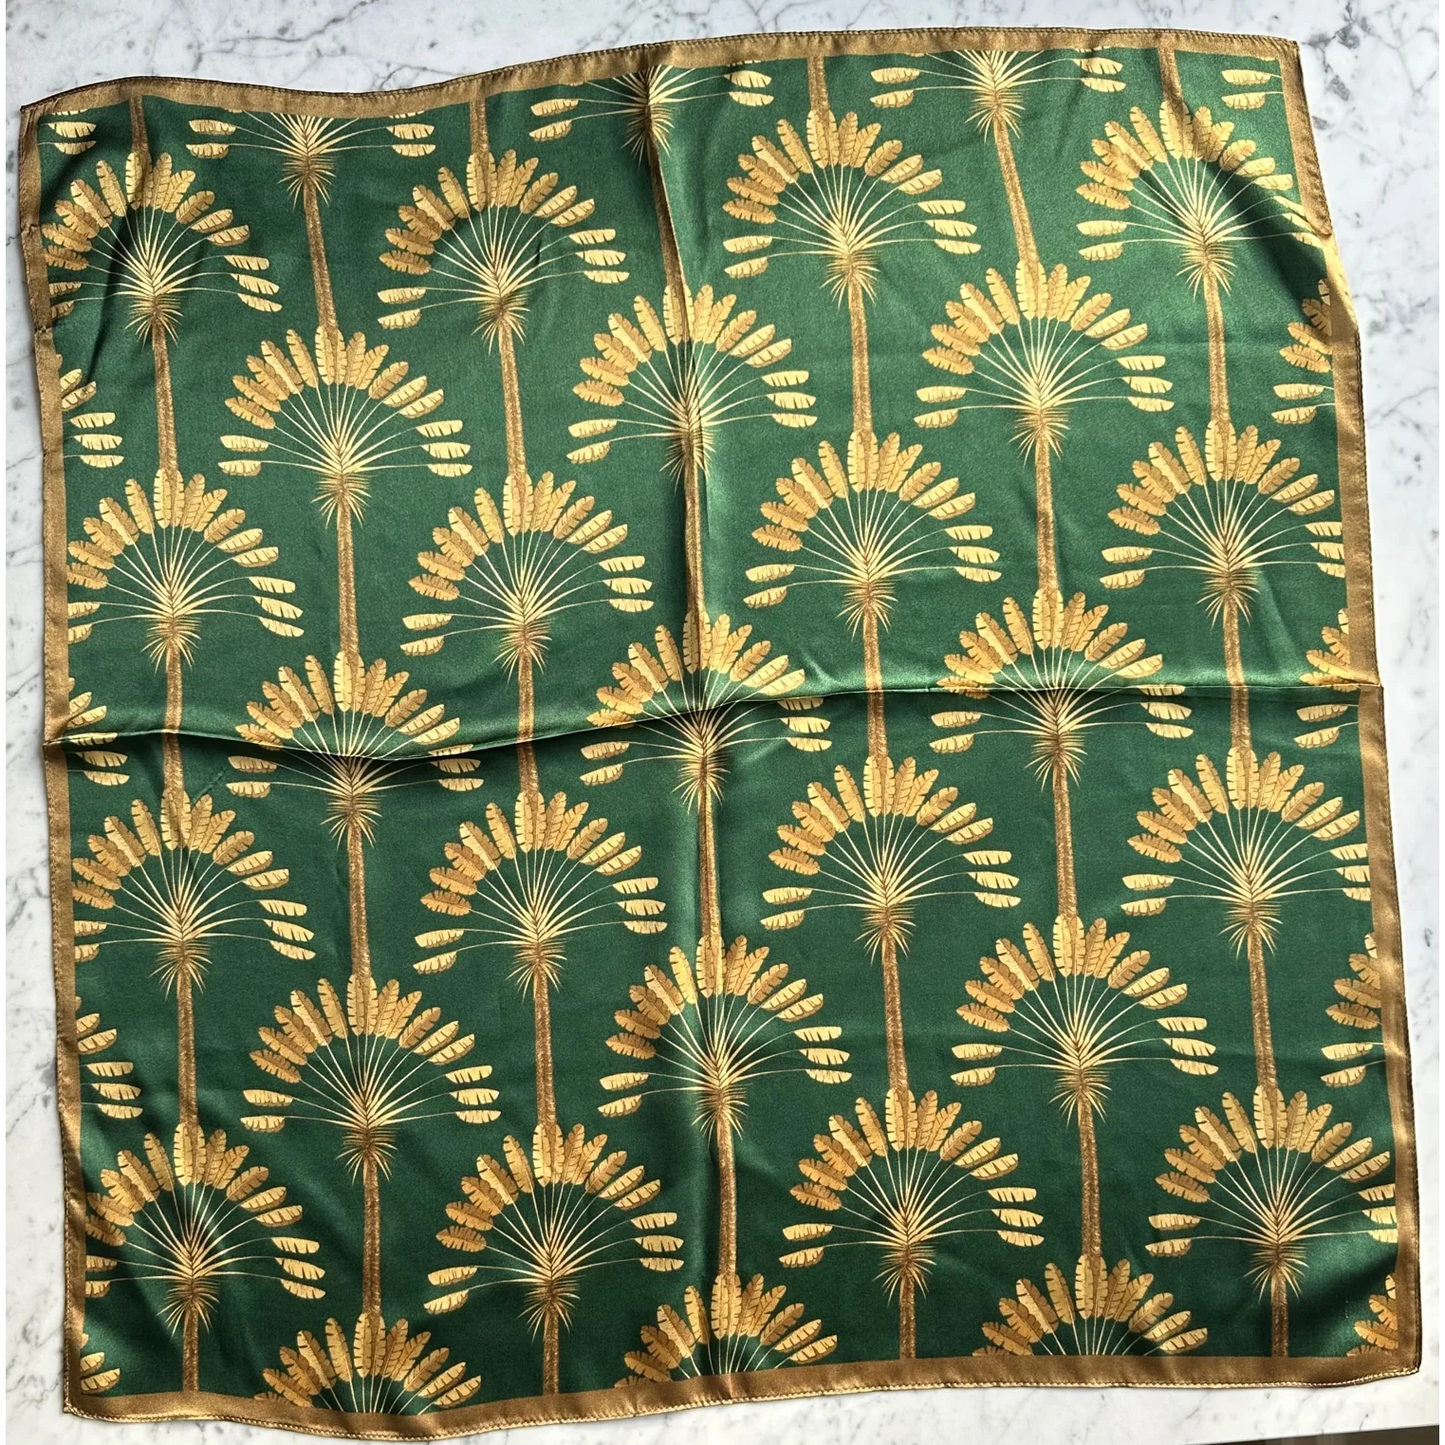 Silketørklæde / Cara - Grøn